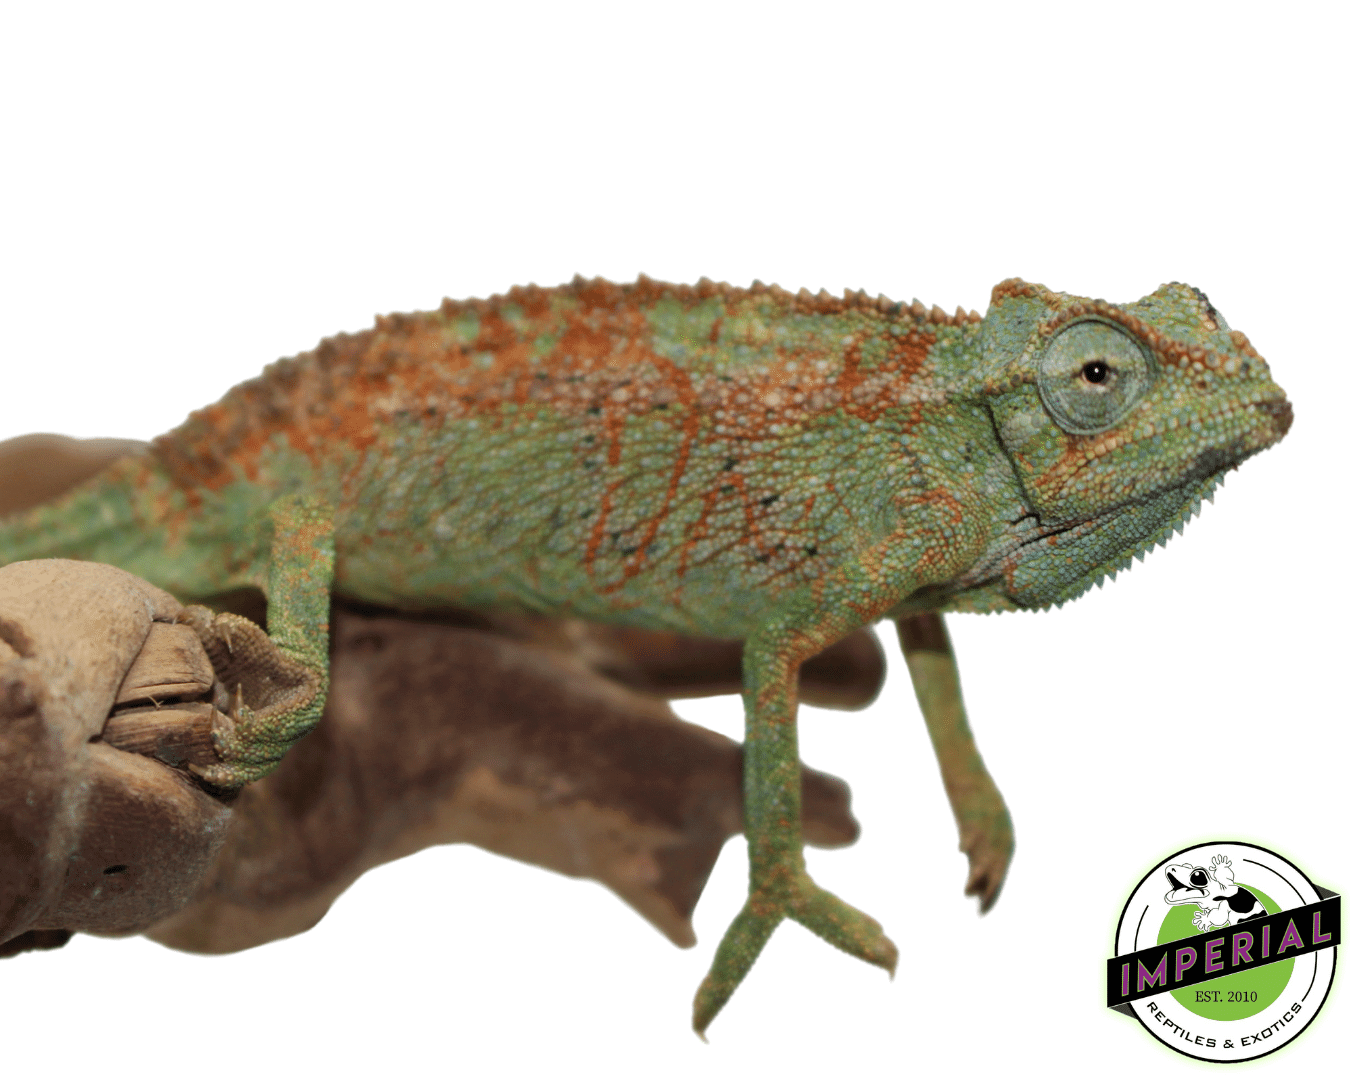 elliots chameleon for sale, buy reptiles online